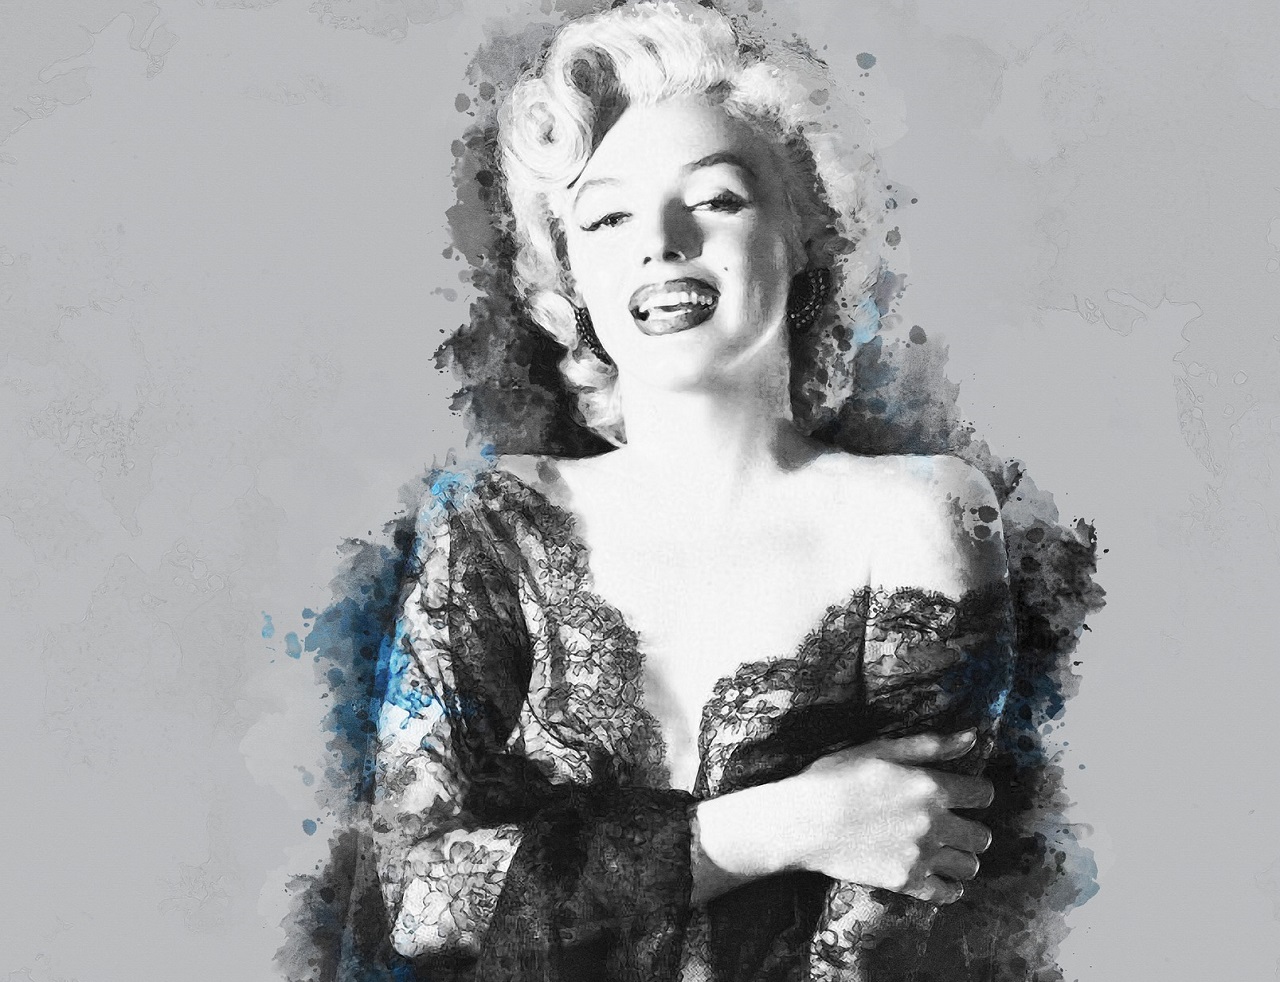 Věděli jste, že byla Marilyn Monroe těhotná? Matkou se bohužel nestala